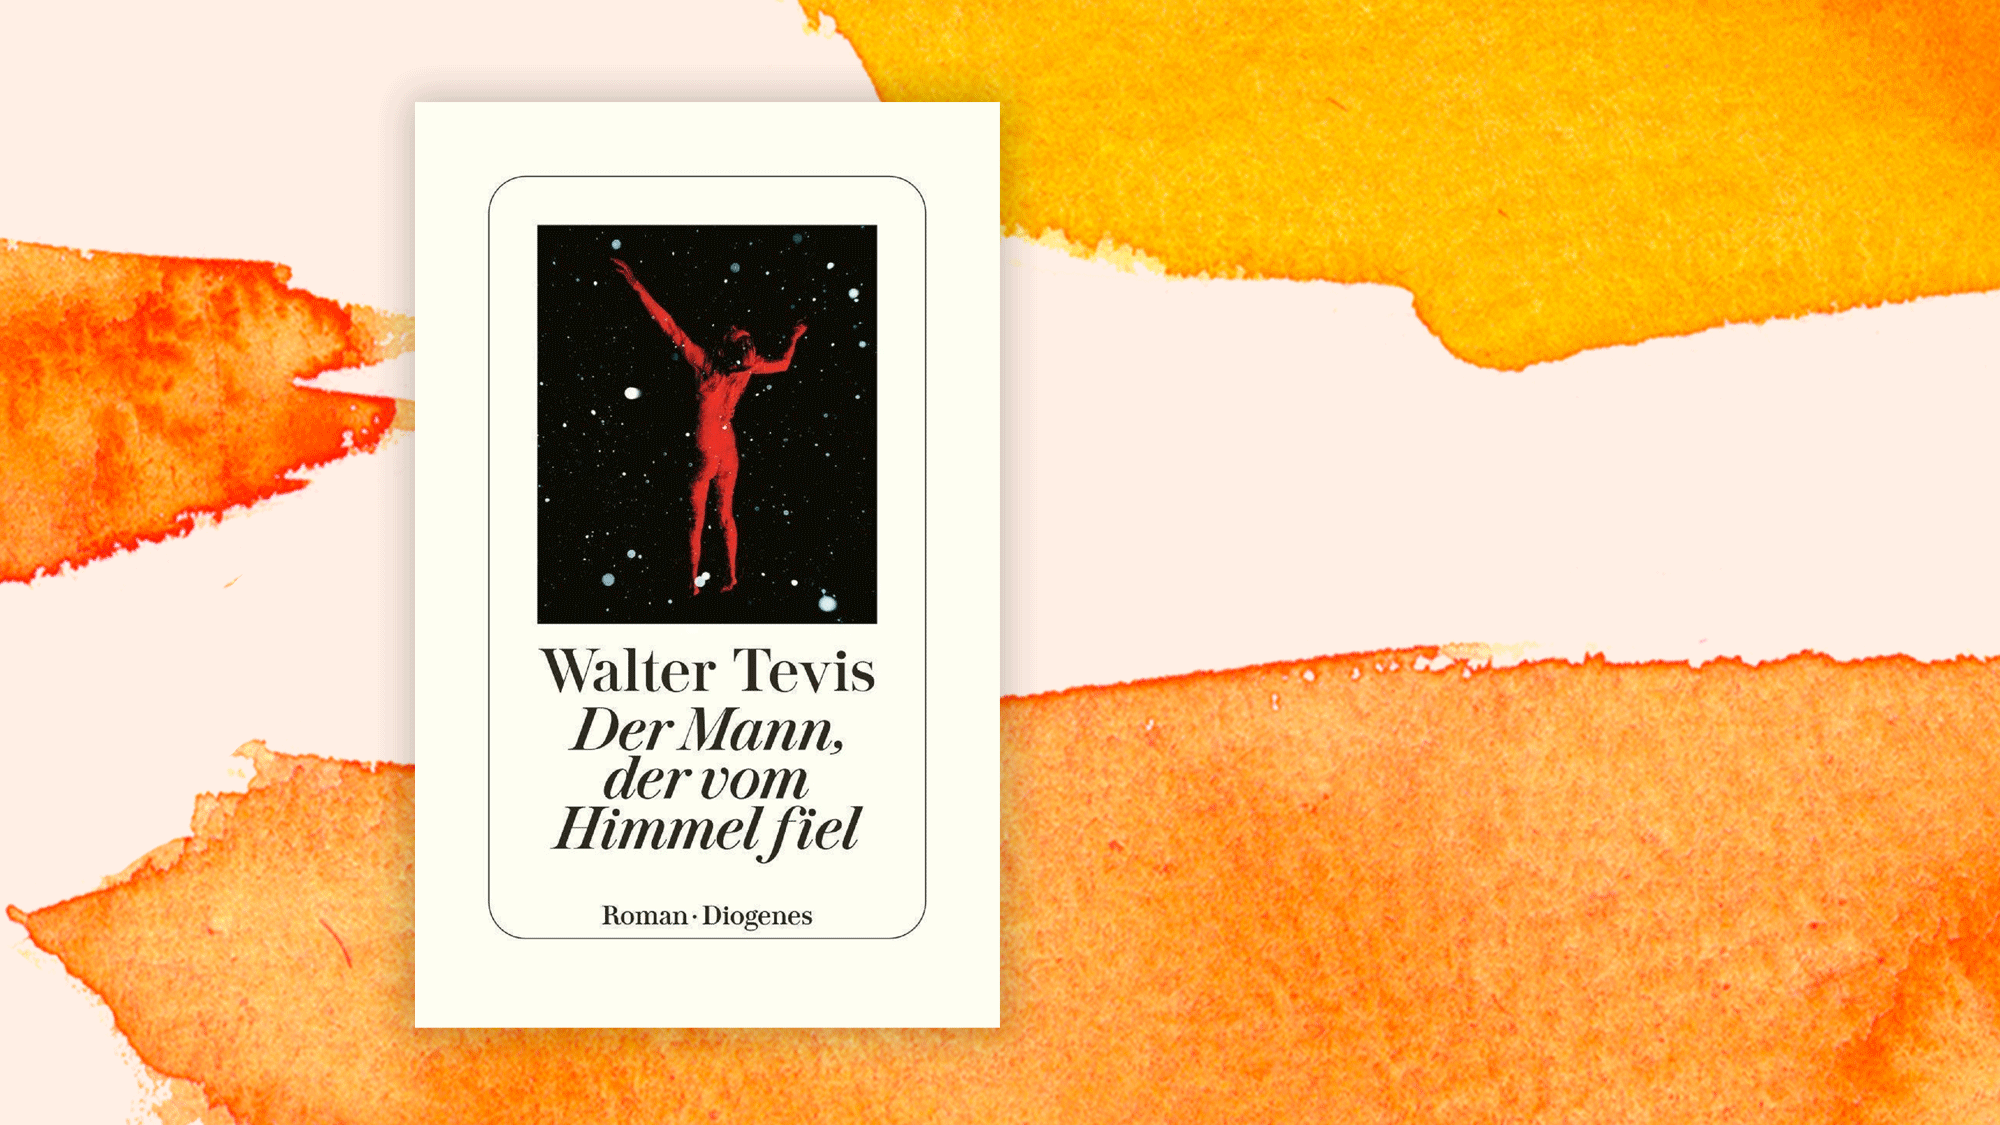 Wir sind die Aliens - Walter Tevis: "Der Mann, der vom Himmel fiel" 